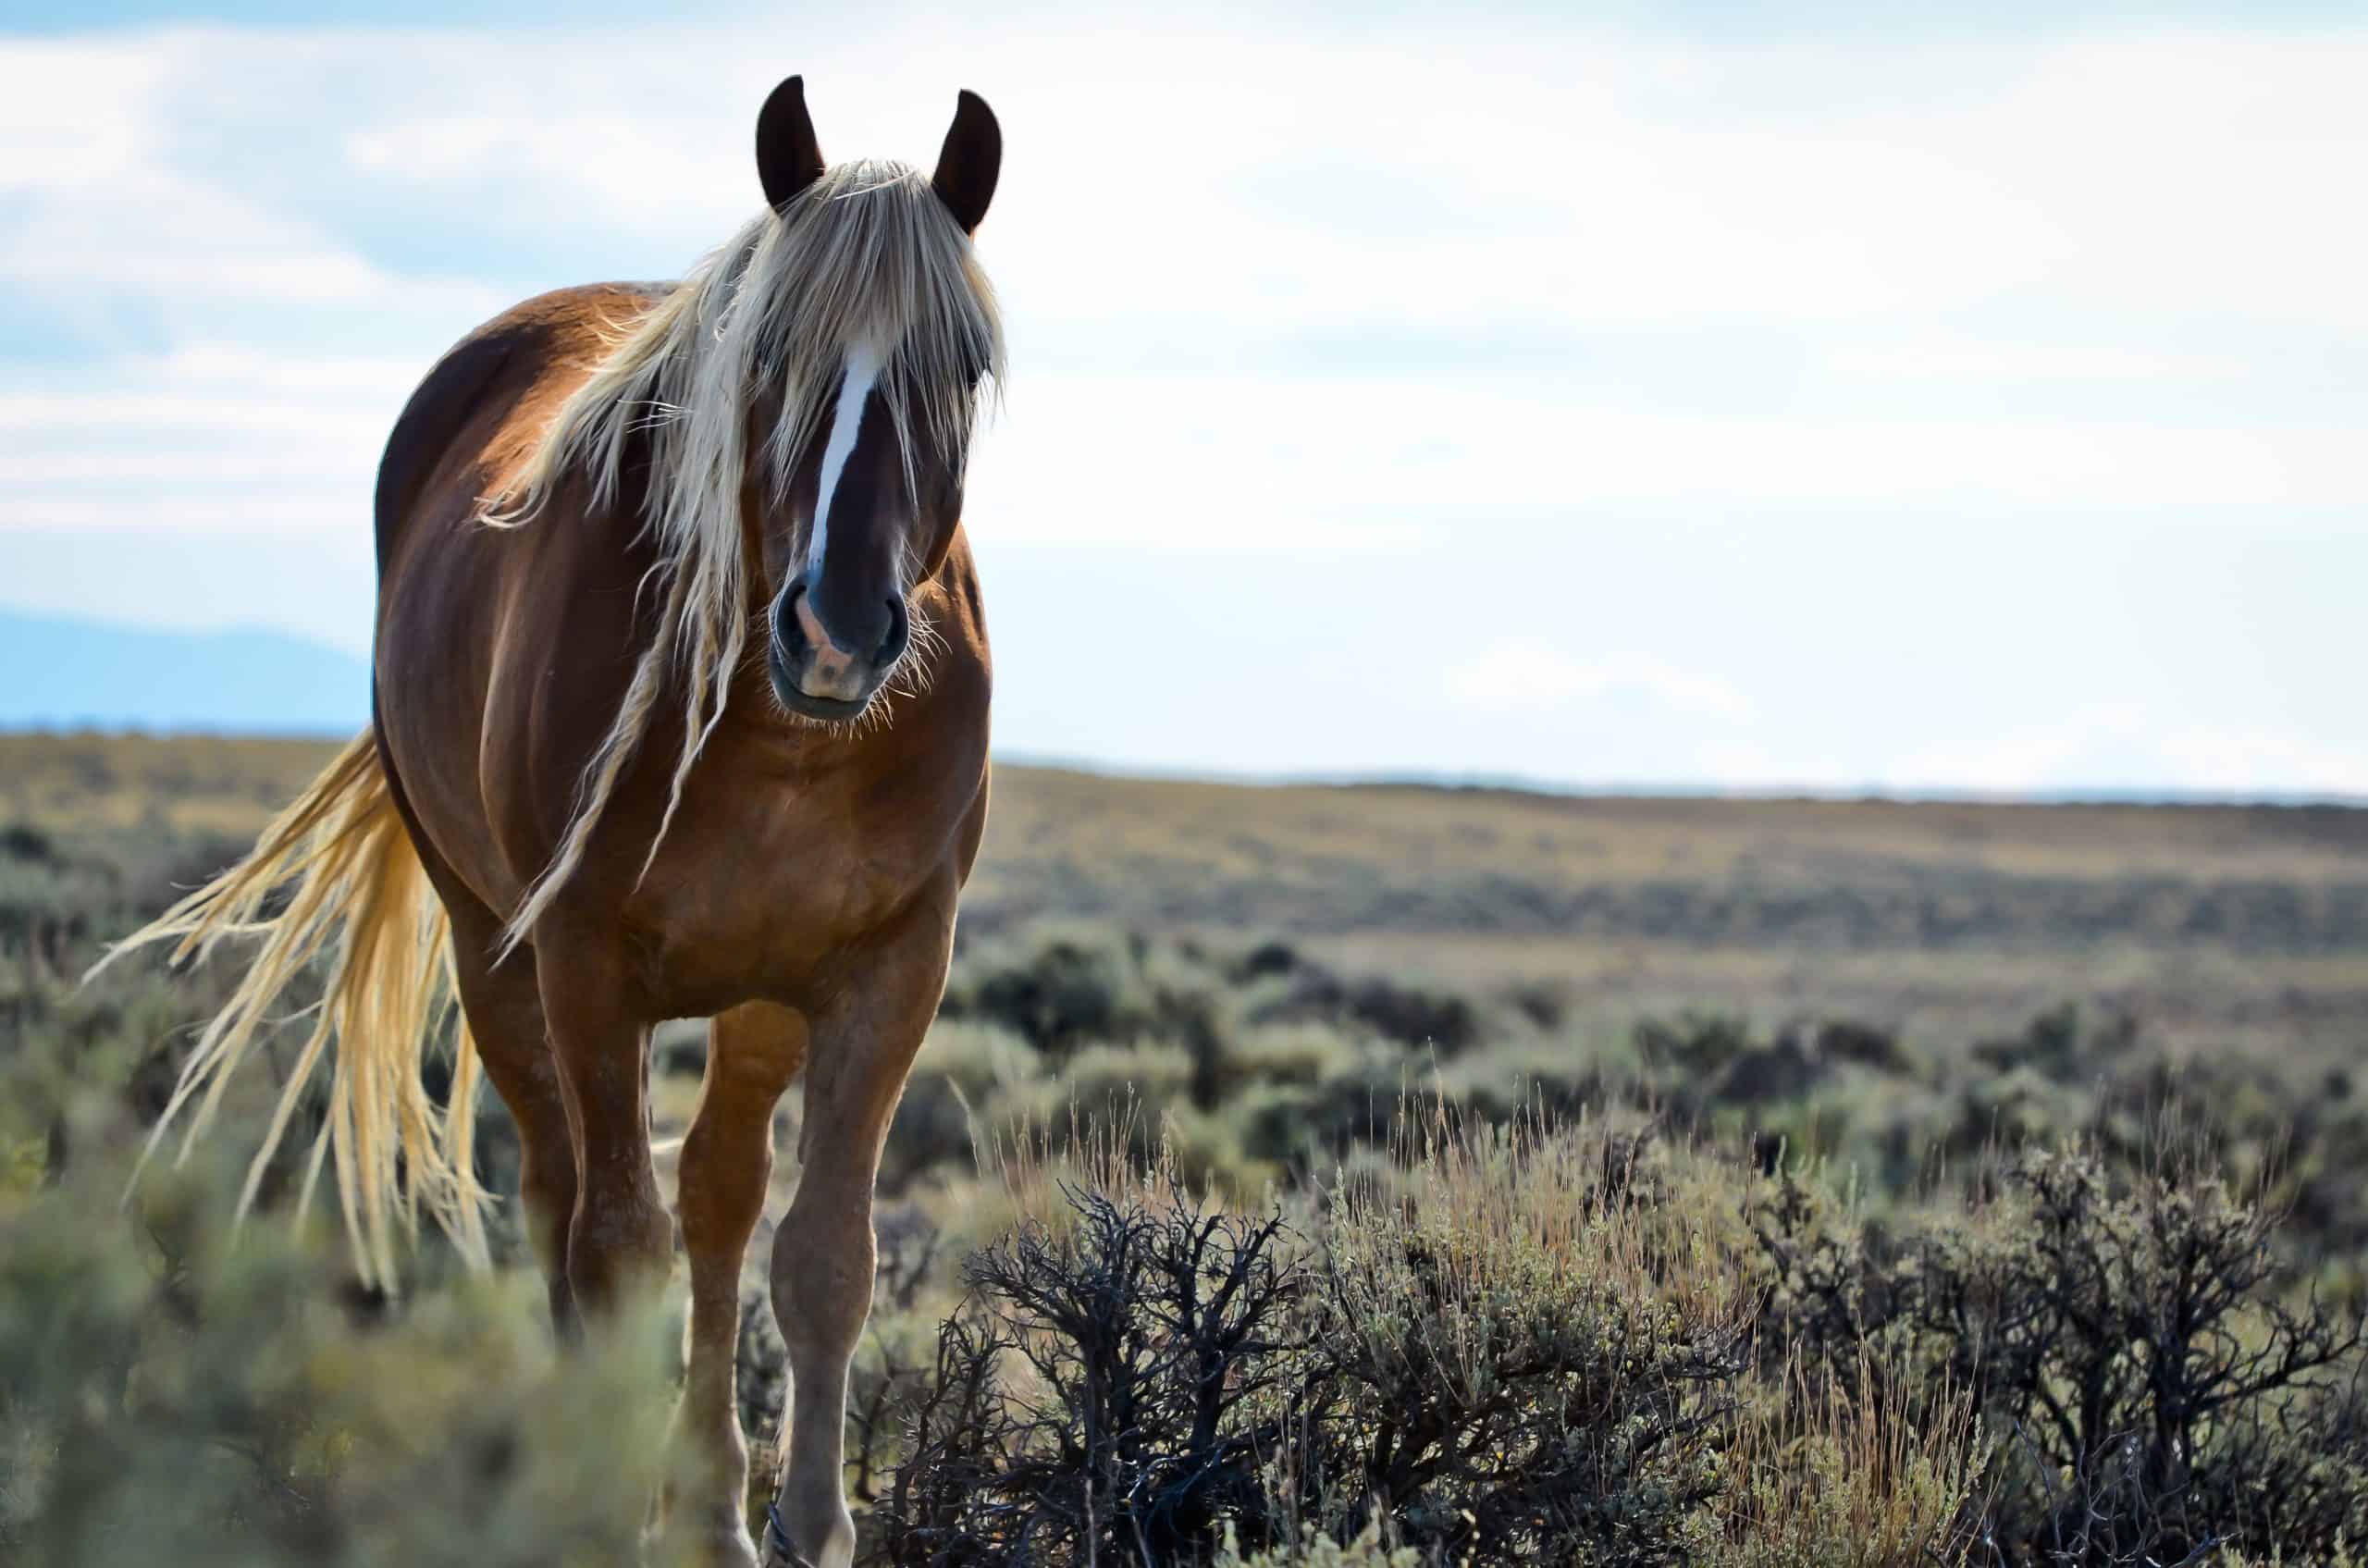 Wild Mustang near Cody, Wyoming.